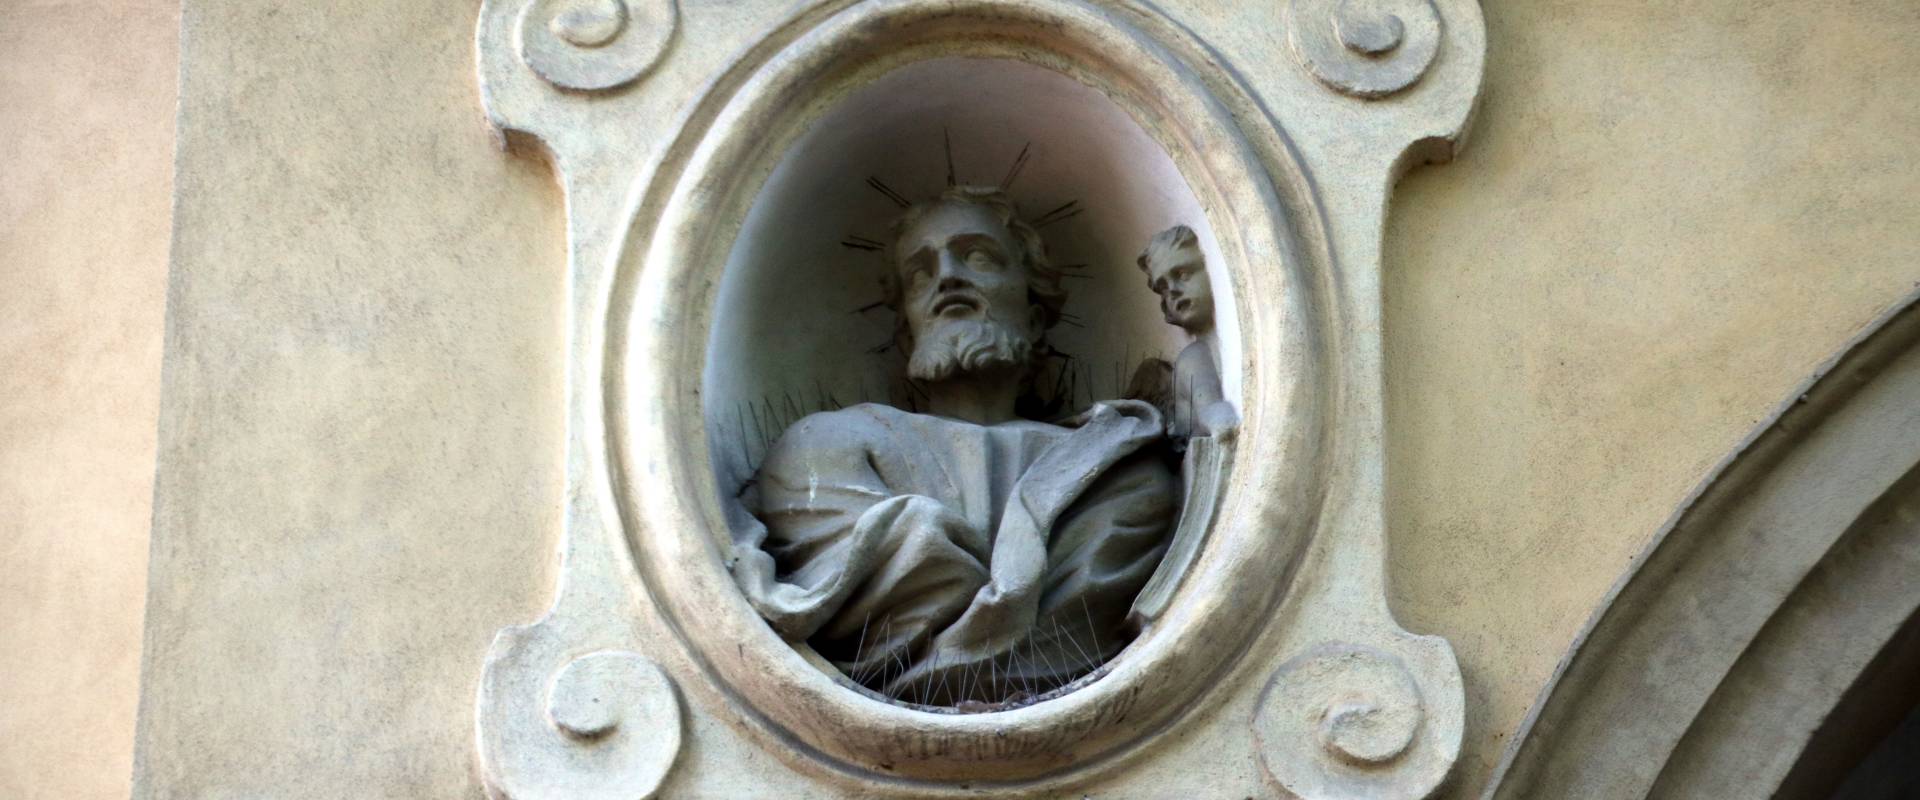 Basilica di San Savino (Piacenza), busto della facciata 01 foto di Mongolo1984